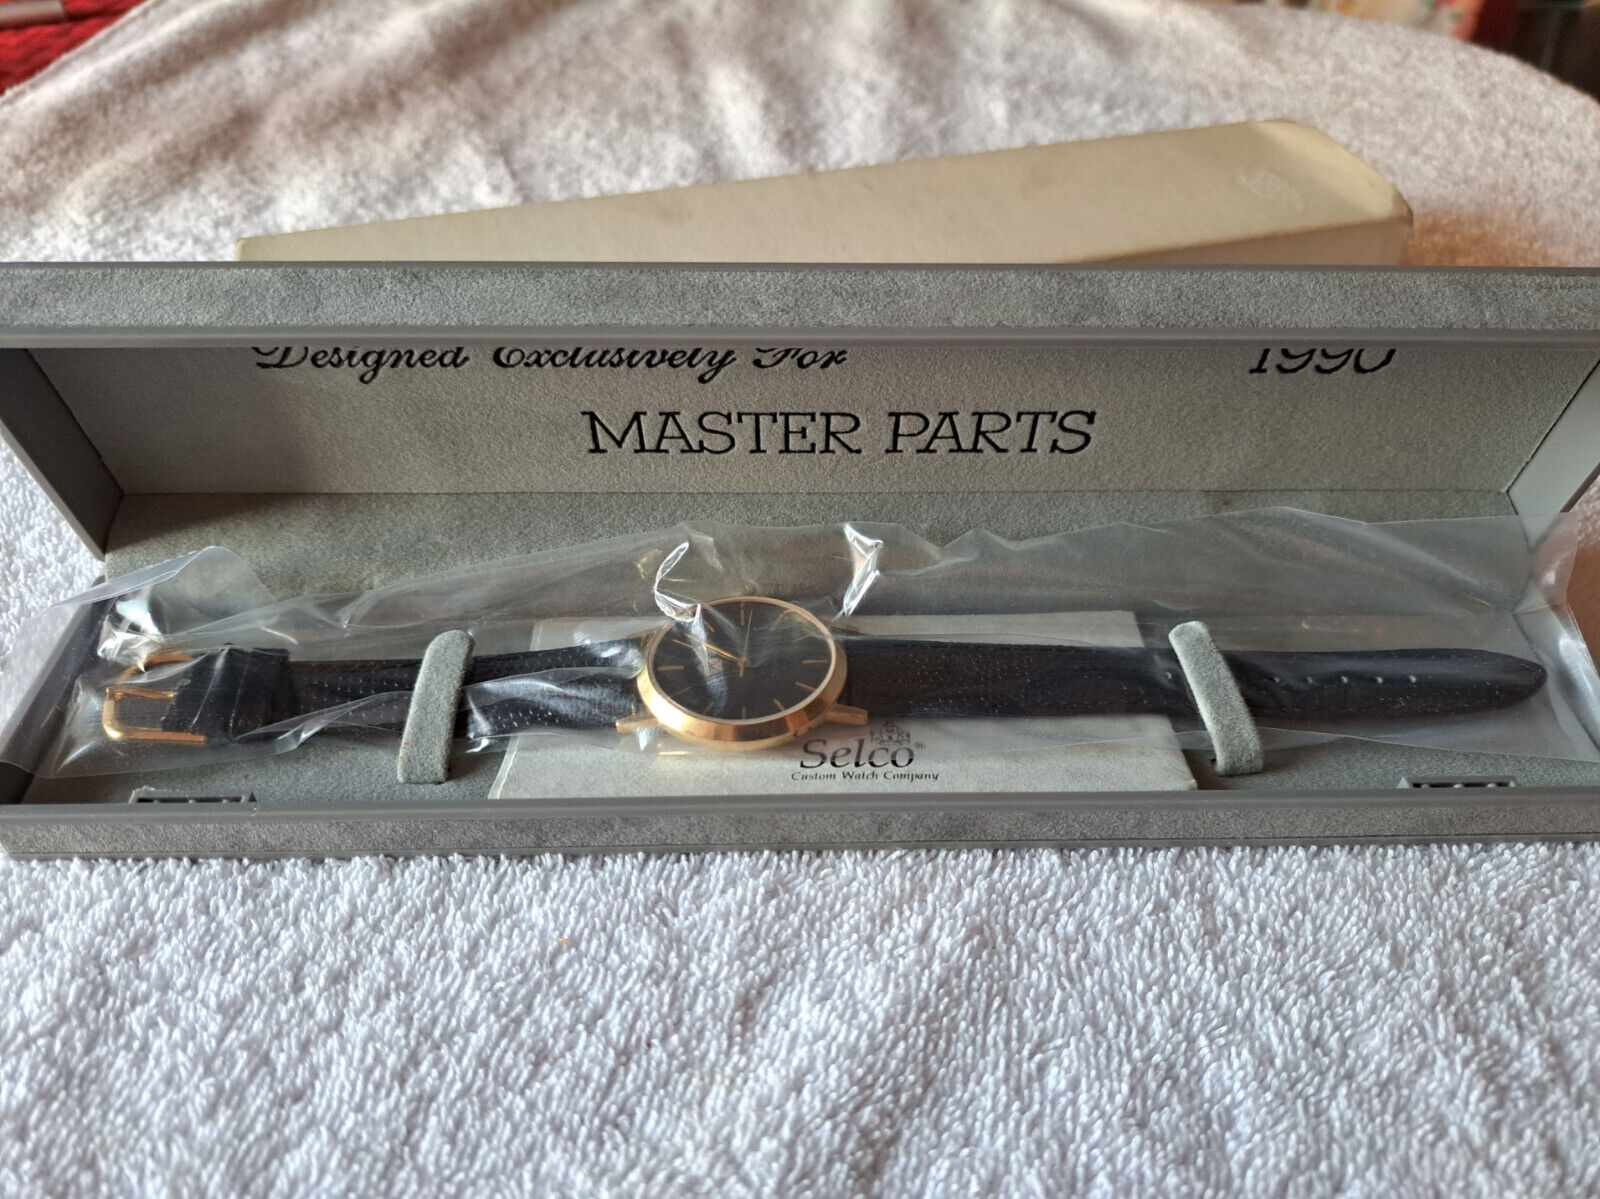 Chrysler Mopar 1990 Master Parts Award Watch Selco Quartz